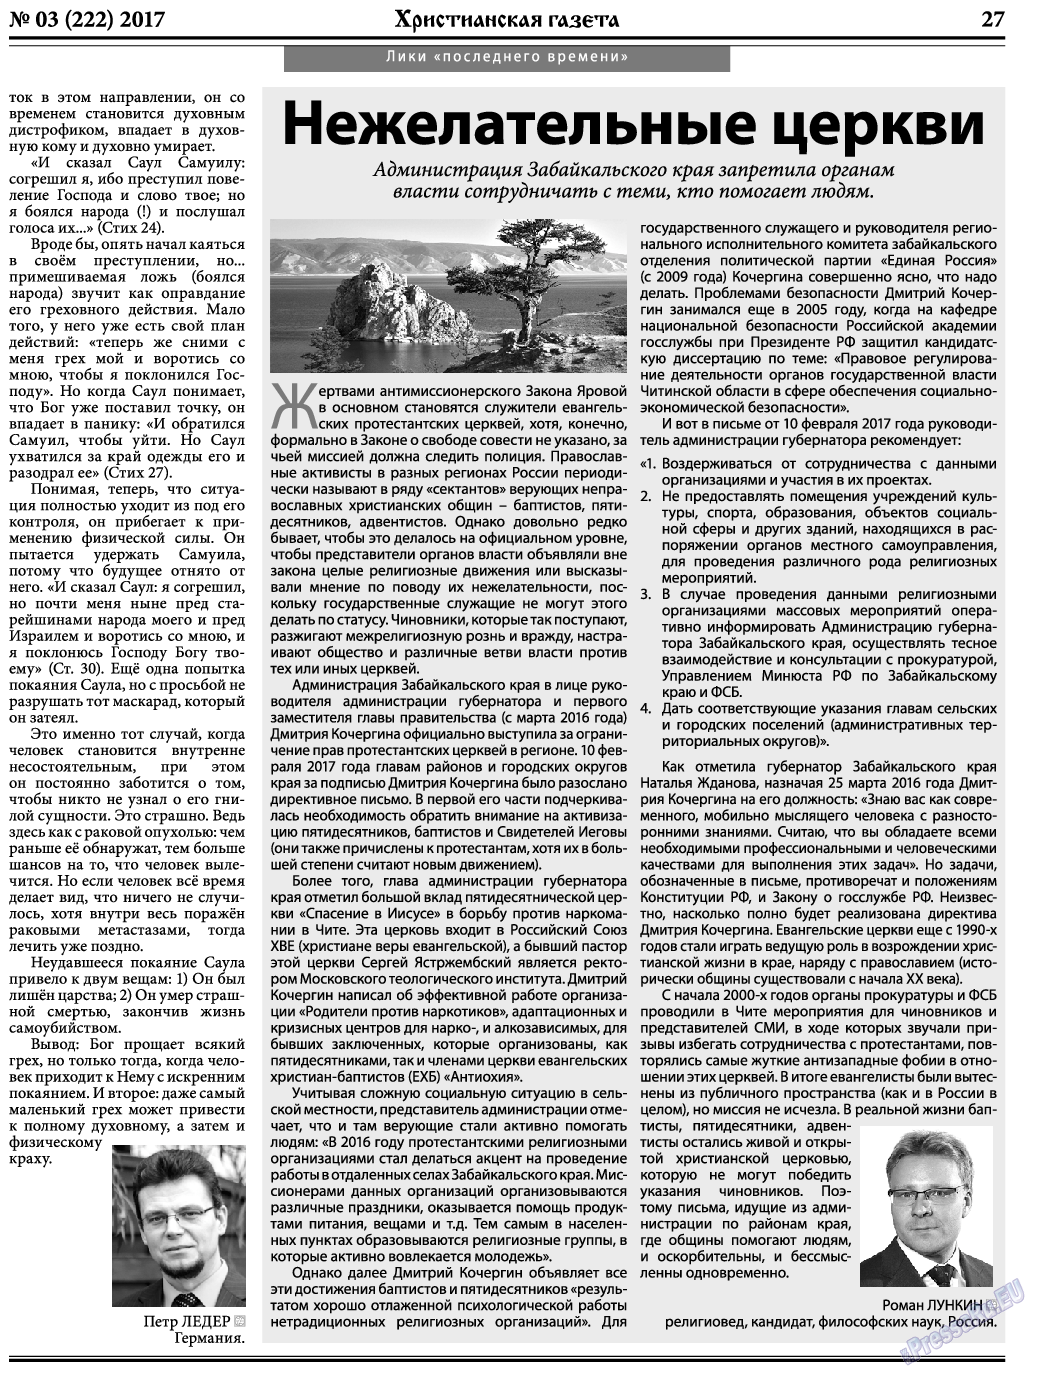 Христианская газета, газета. 2017 №3 стр.27